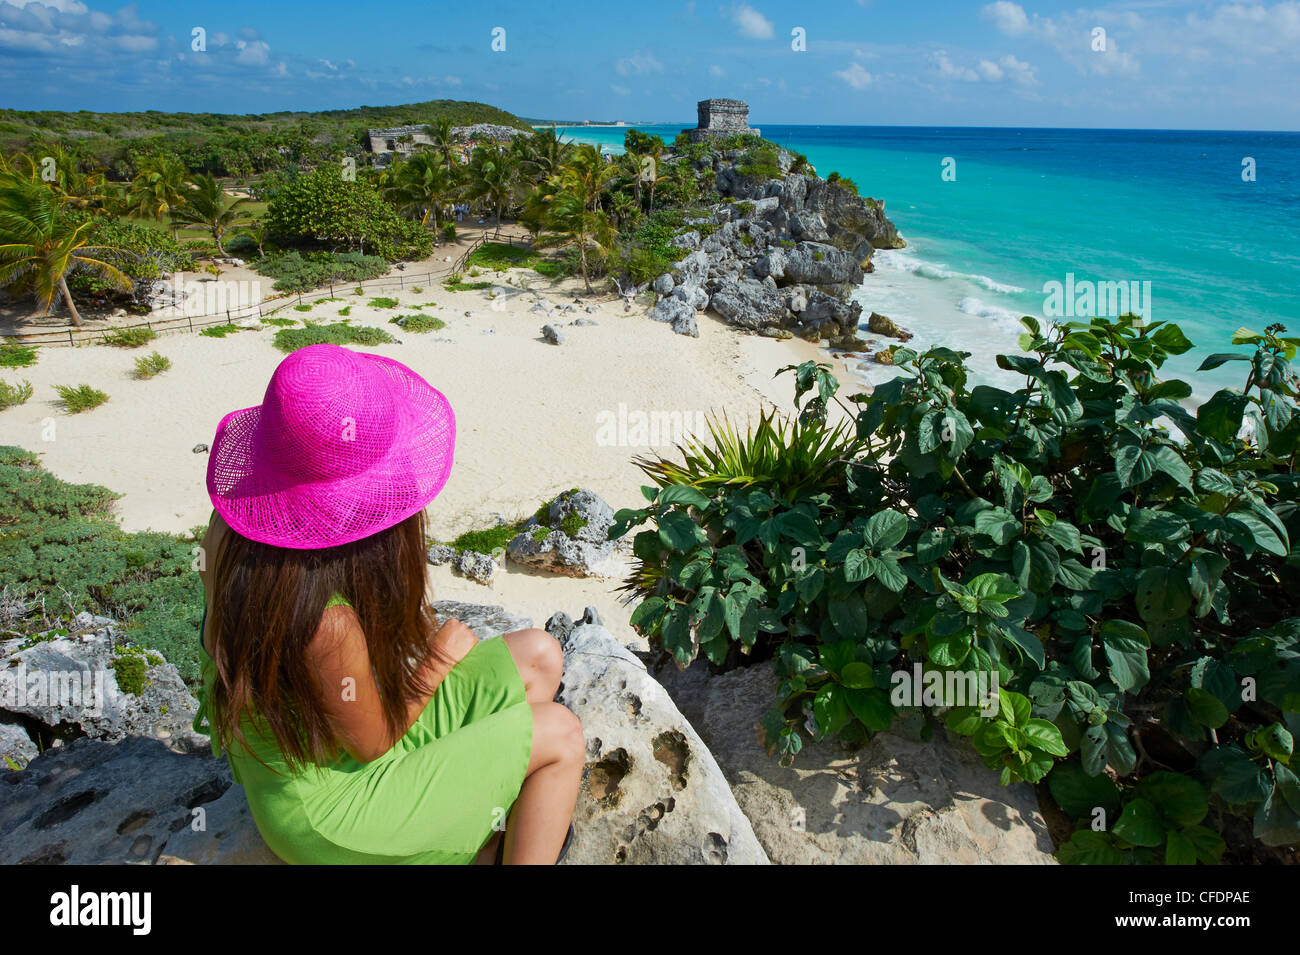 Tourisme de la côte des Caraïbes à la plage de Tulum plus à l'ancien site maya de Tulum, Cancun, Quintana Roo, Mexique Banque D'Images